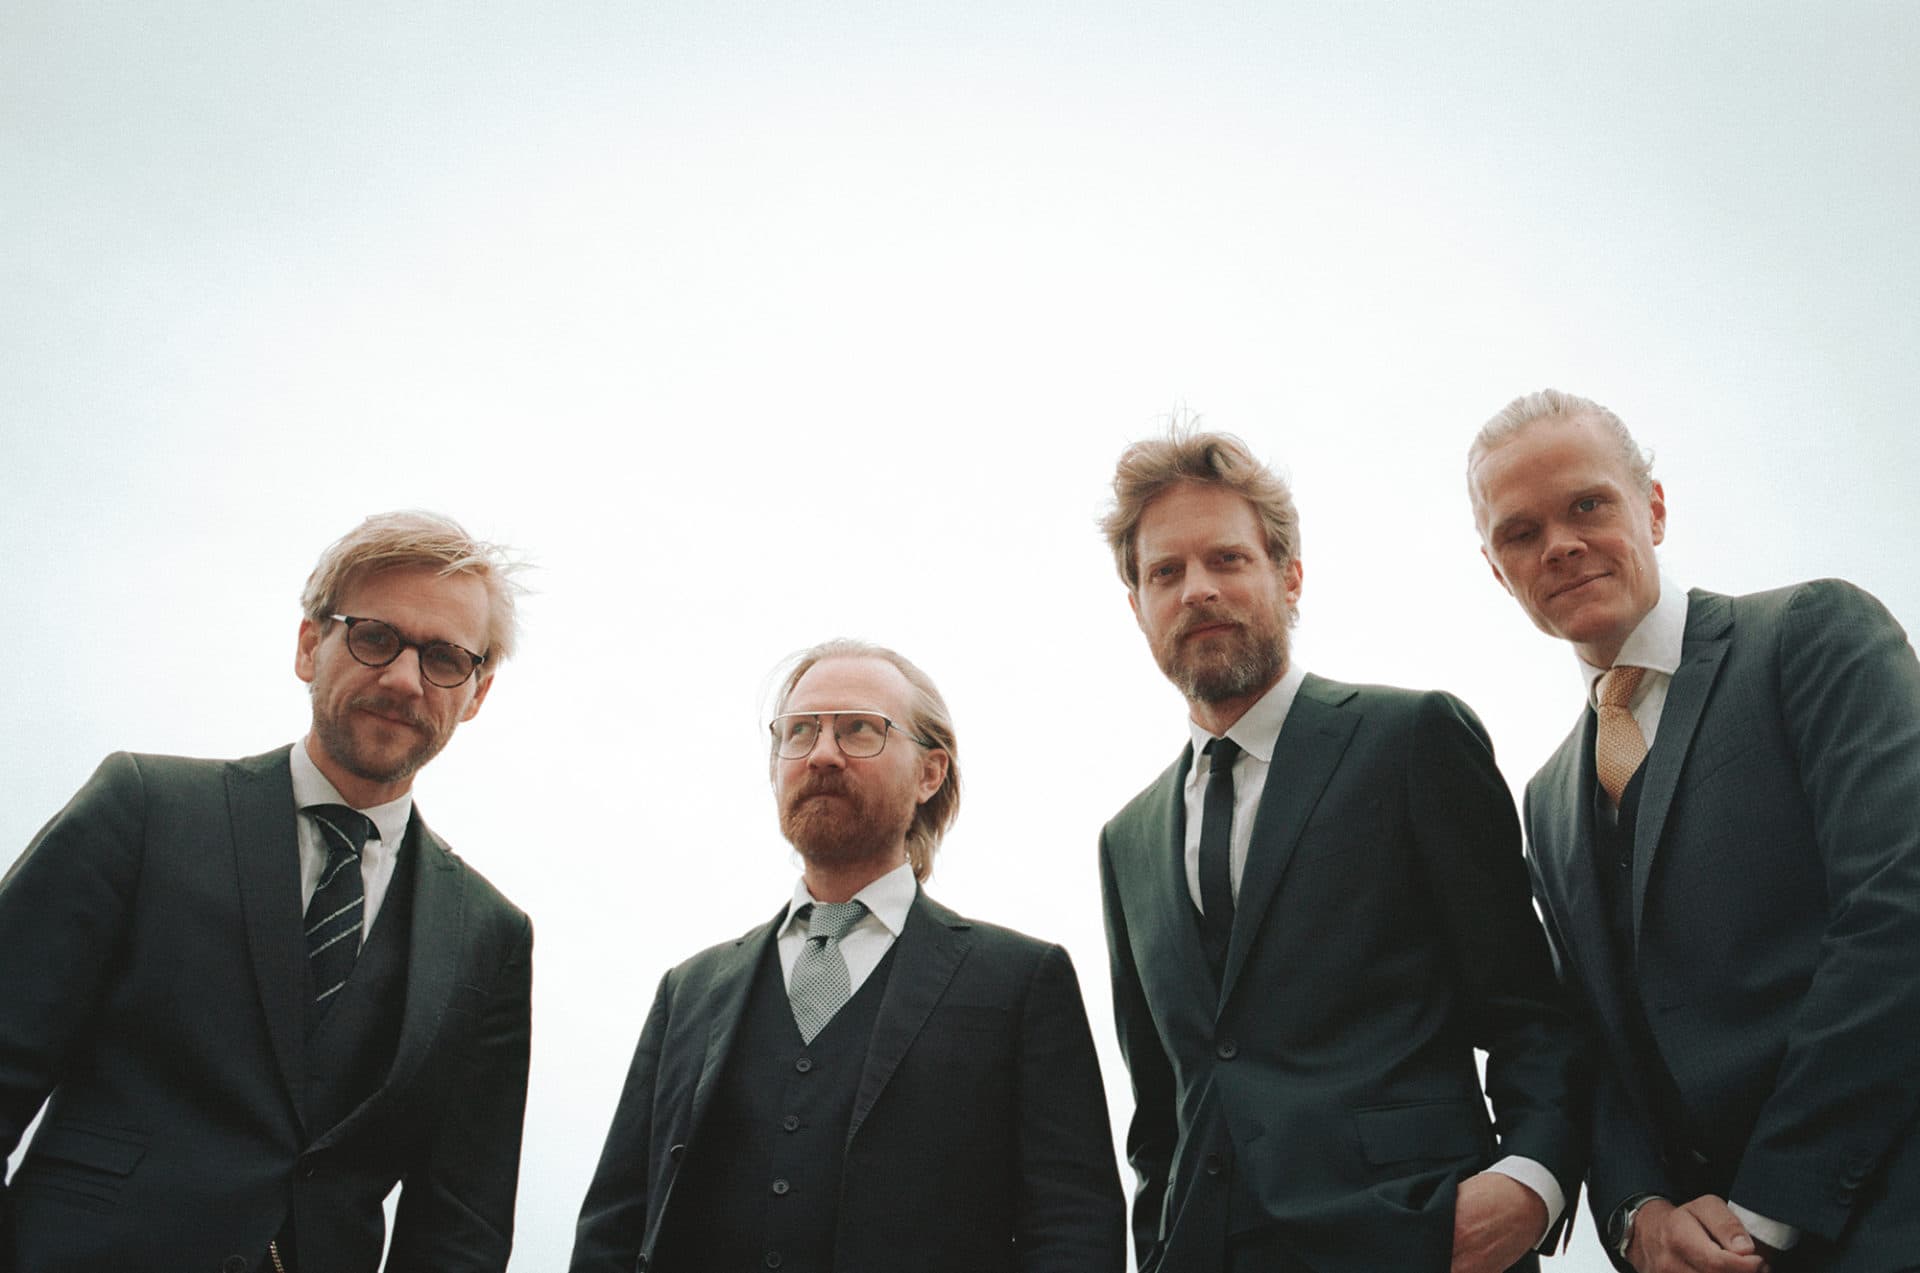 The Danish String Quartet, from left to right: Rune Tonsgaard Sørensen, Fredrik Schøyen Sjölin, Asbjørn Nørgaard, Frederik Øland. (Courtesy Caroline Bittencourt)